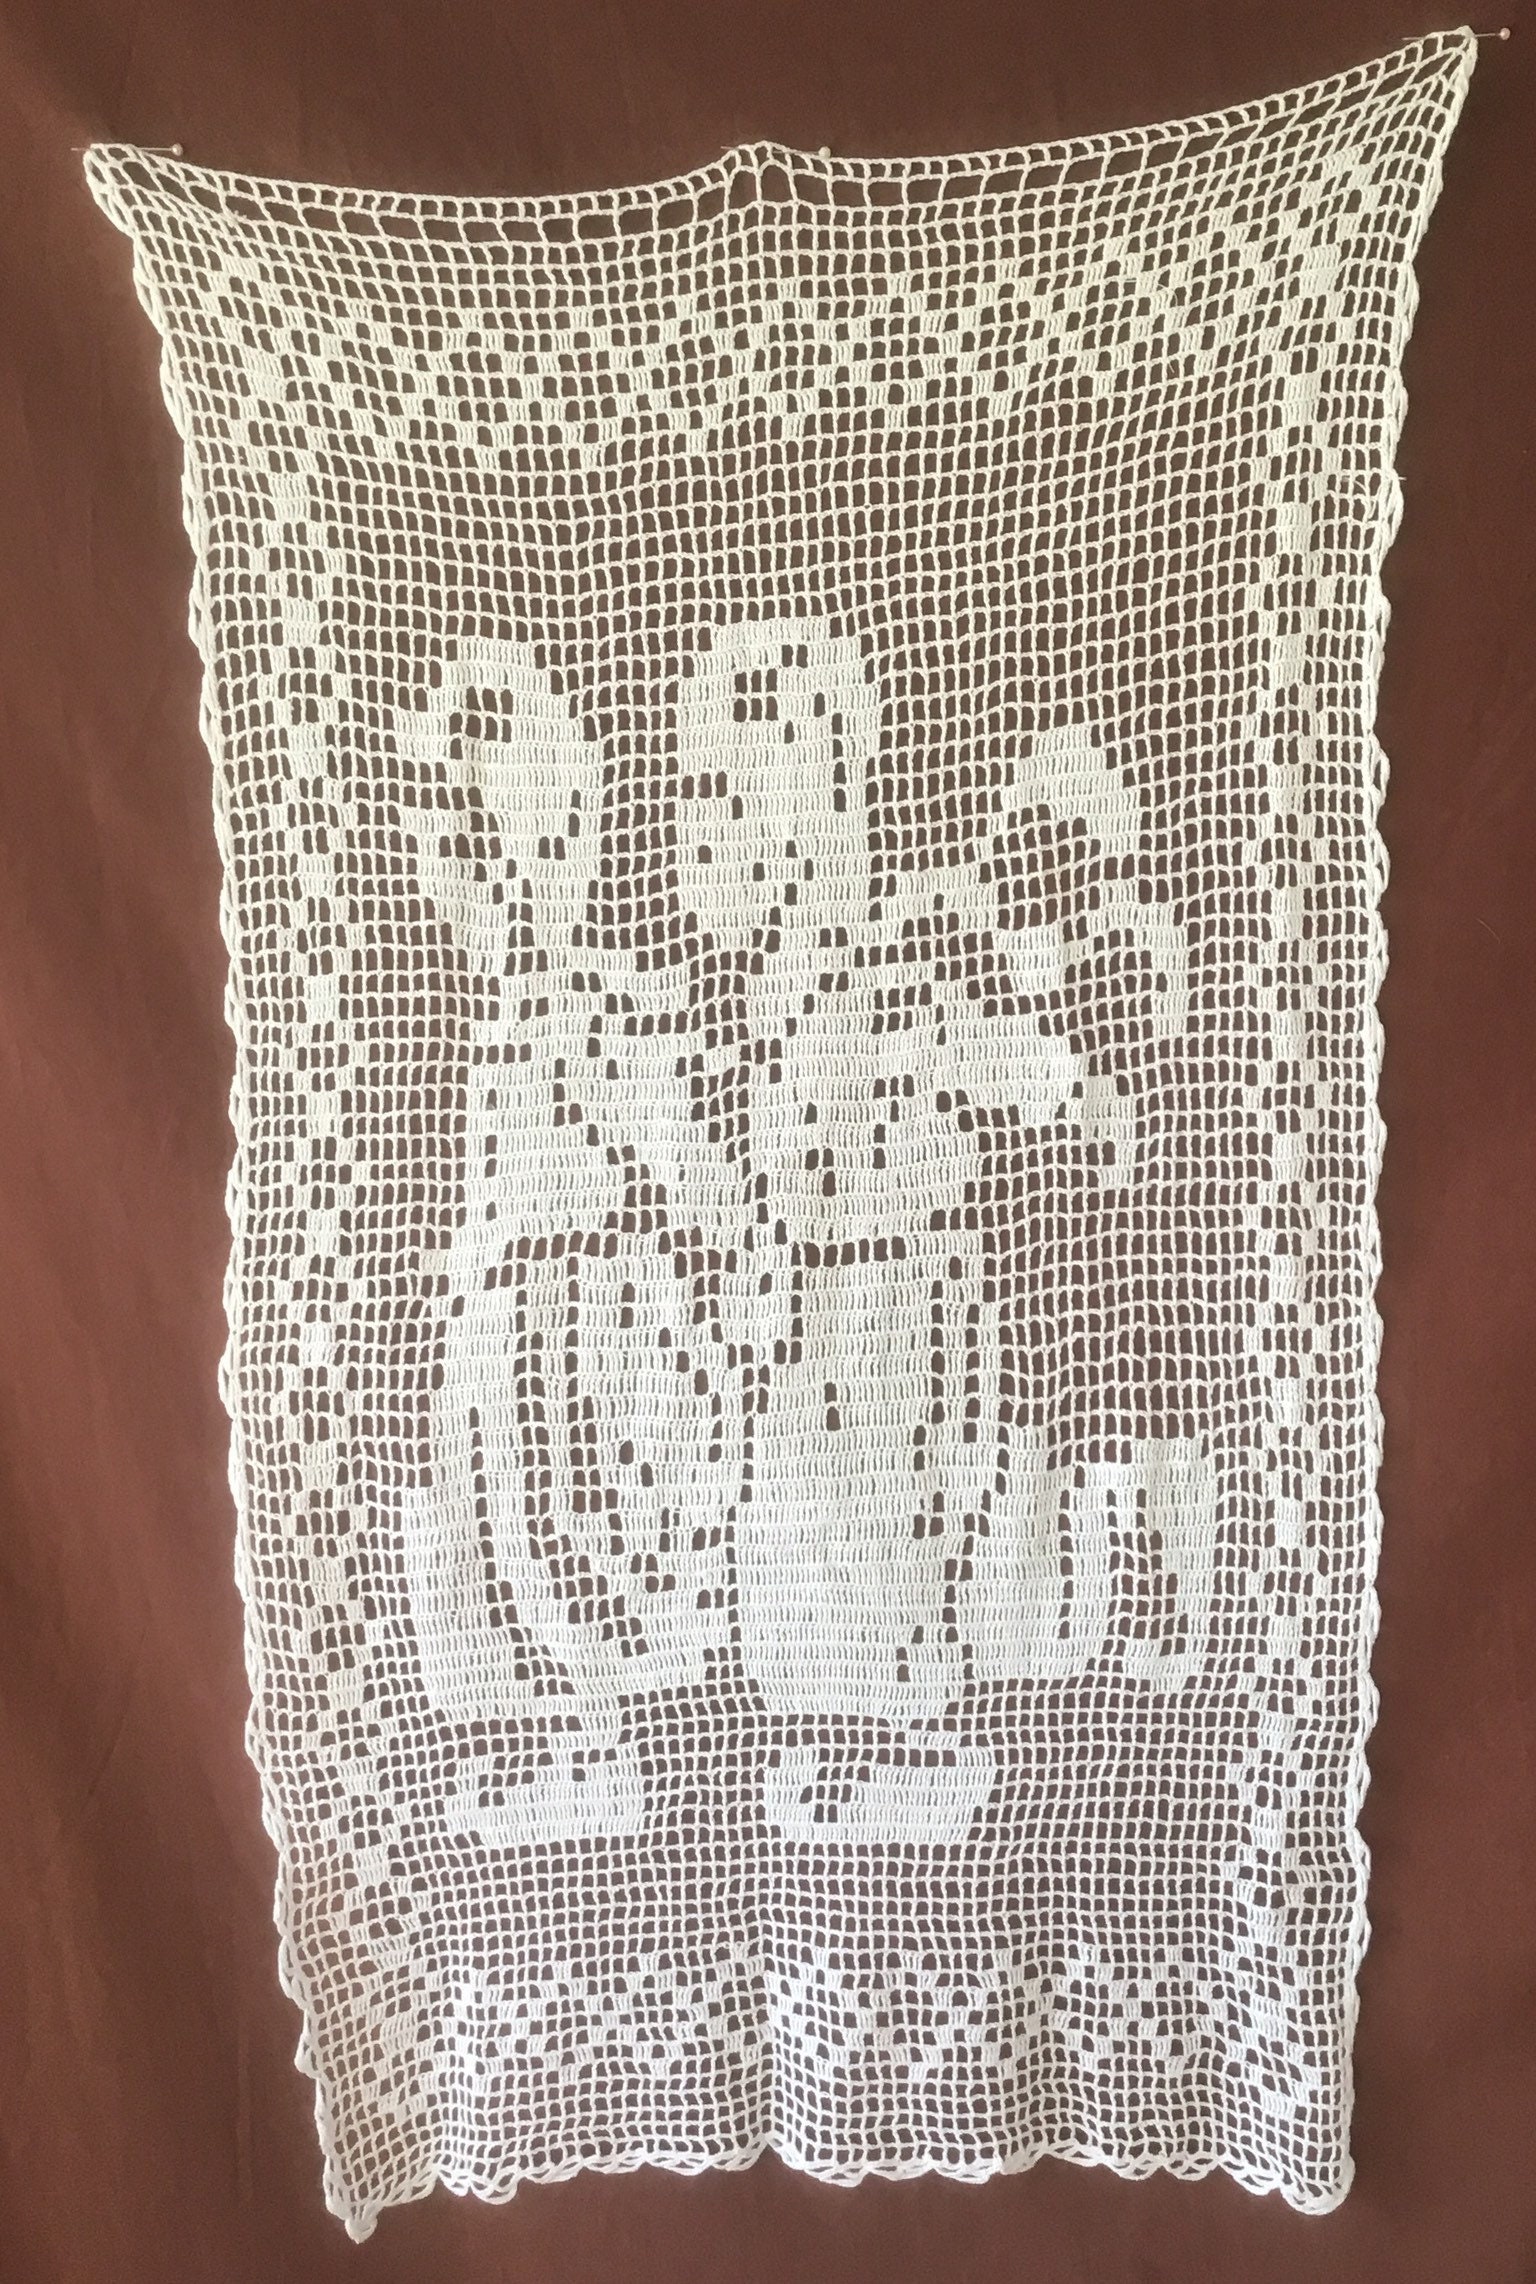 Rideau. Rideau Vintage Crocheté à La Main. Français Lin Antique et Dentelle